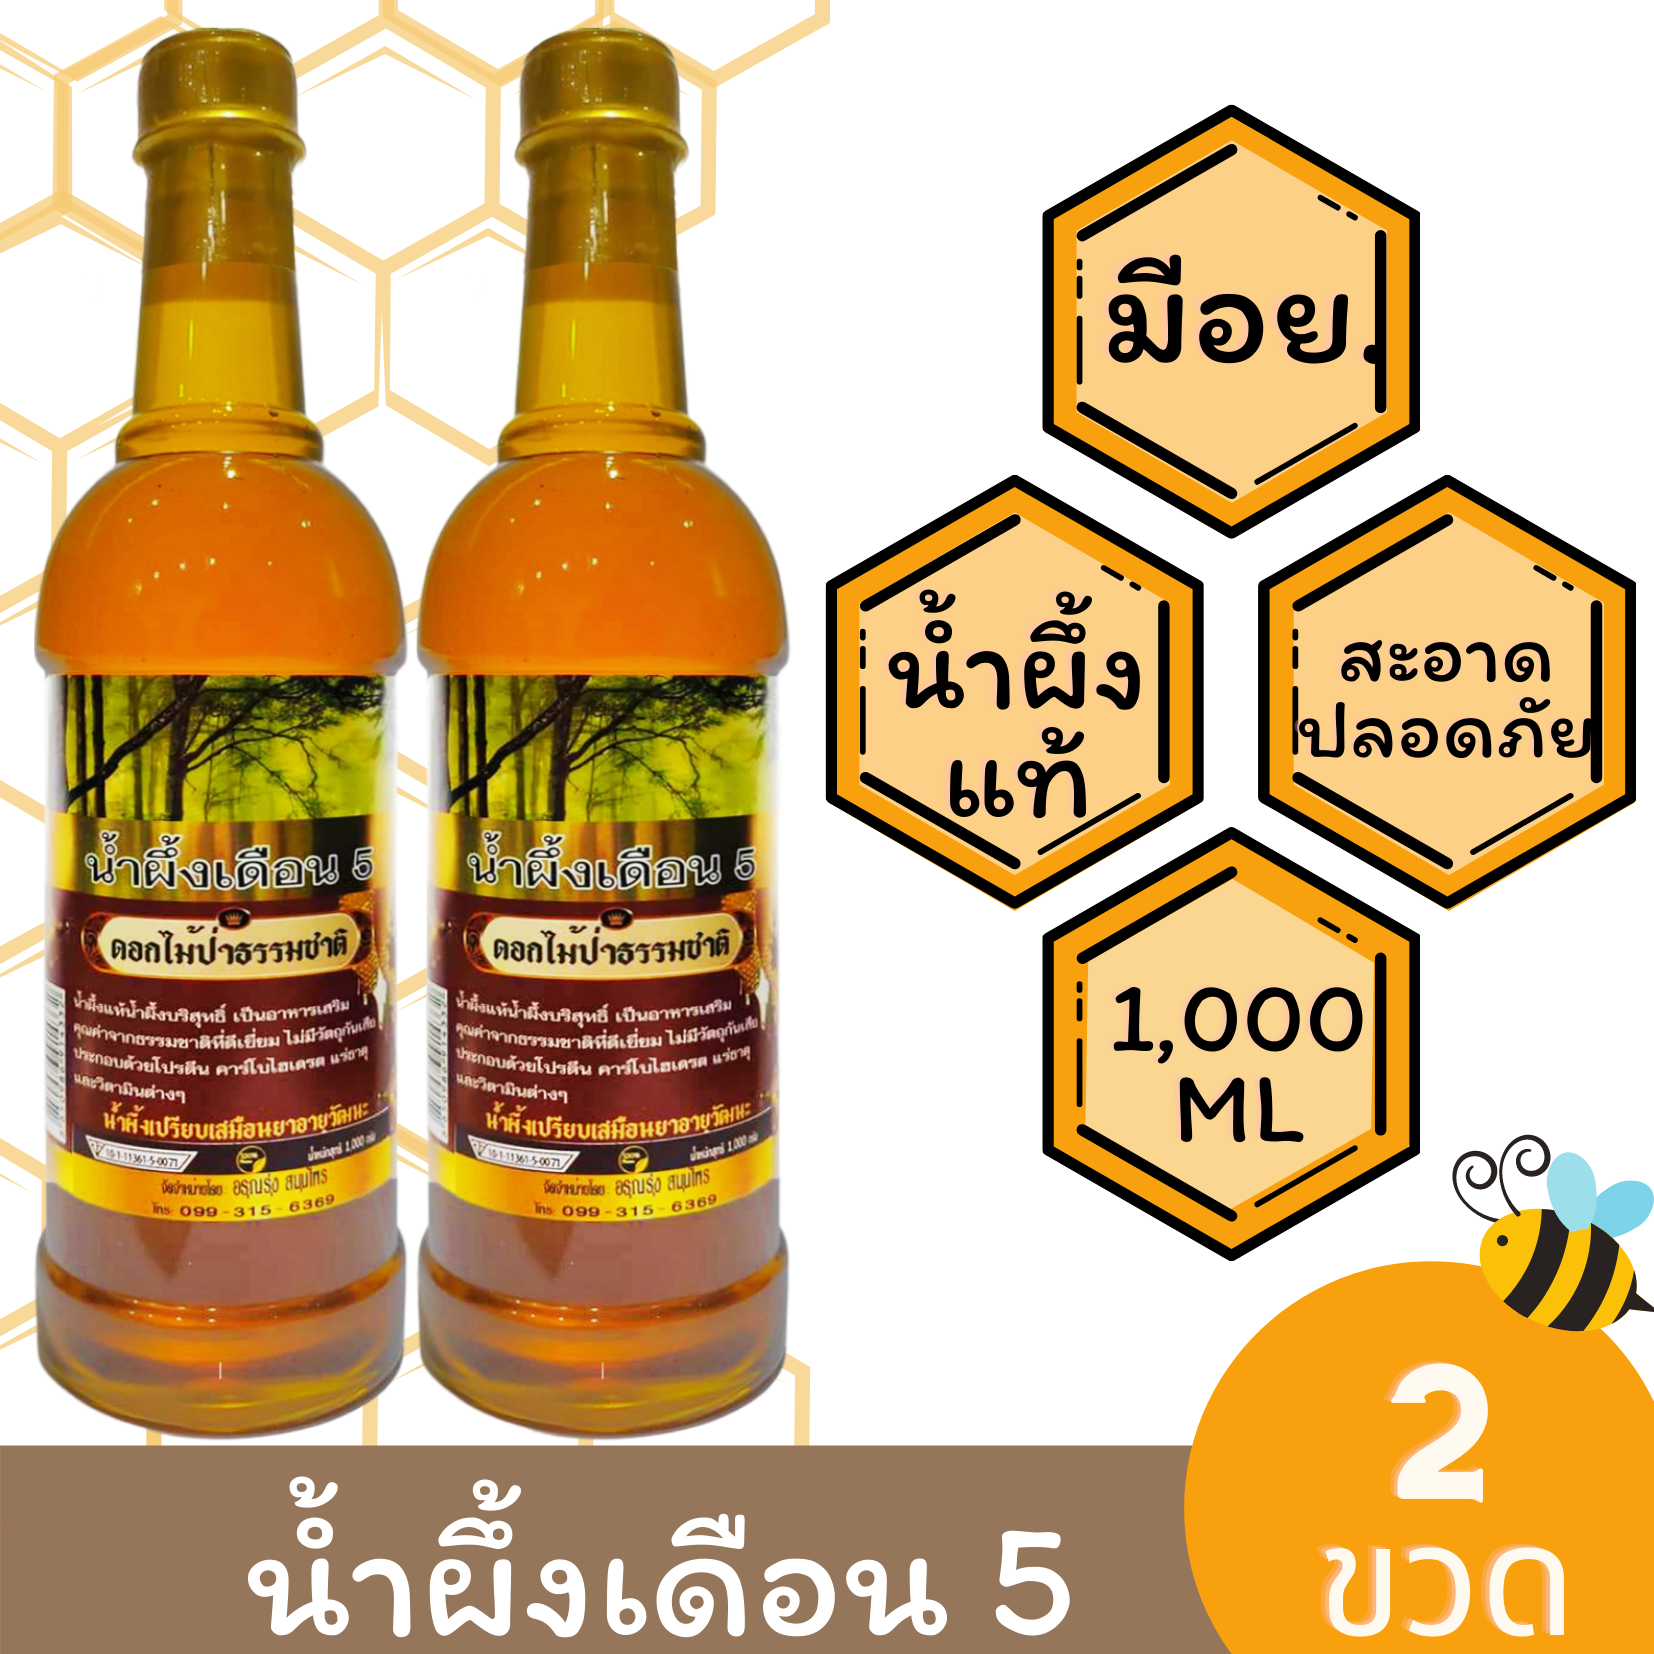 แพ็ค 2 ขวด (ขวดพลาสติก) น้ำผึ้งเดือน 5 น้ำผึ้งอรุณรุ่งสมุนไพร ดอกไม้ป่าธรรมชาติ น้ำผึ้งแท้ น้ำผึ้งบริสุทธิ์ 1,000 กรัม